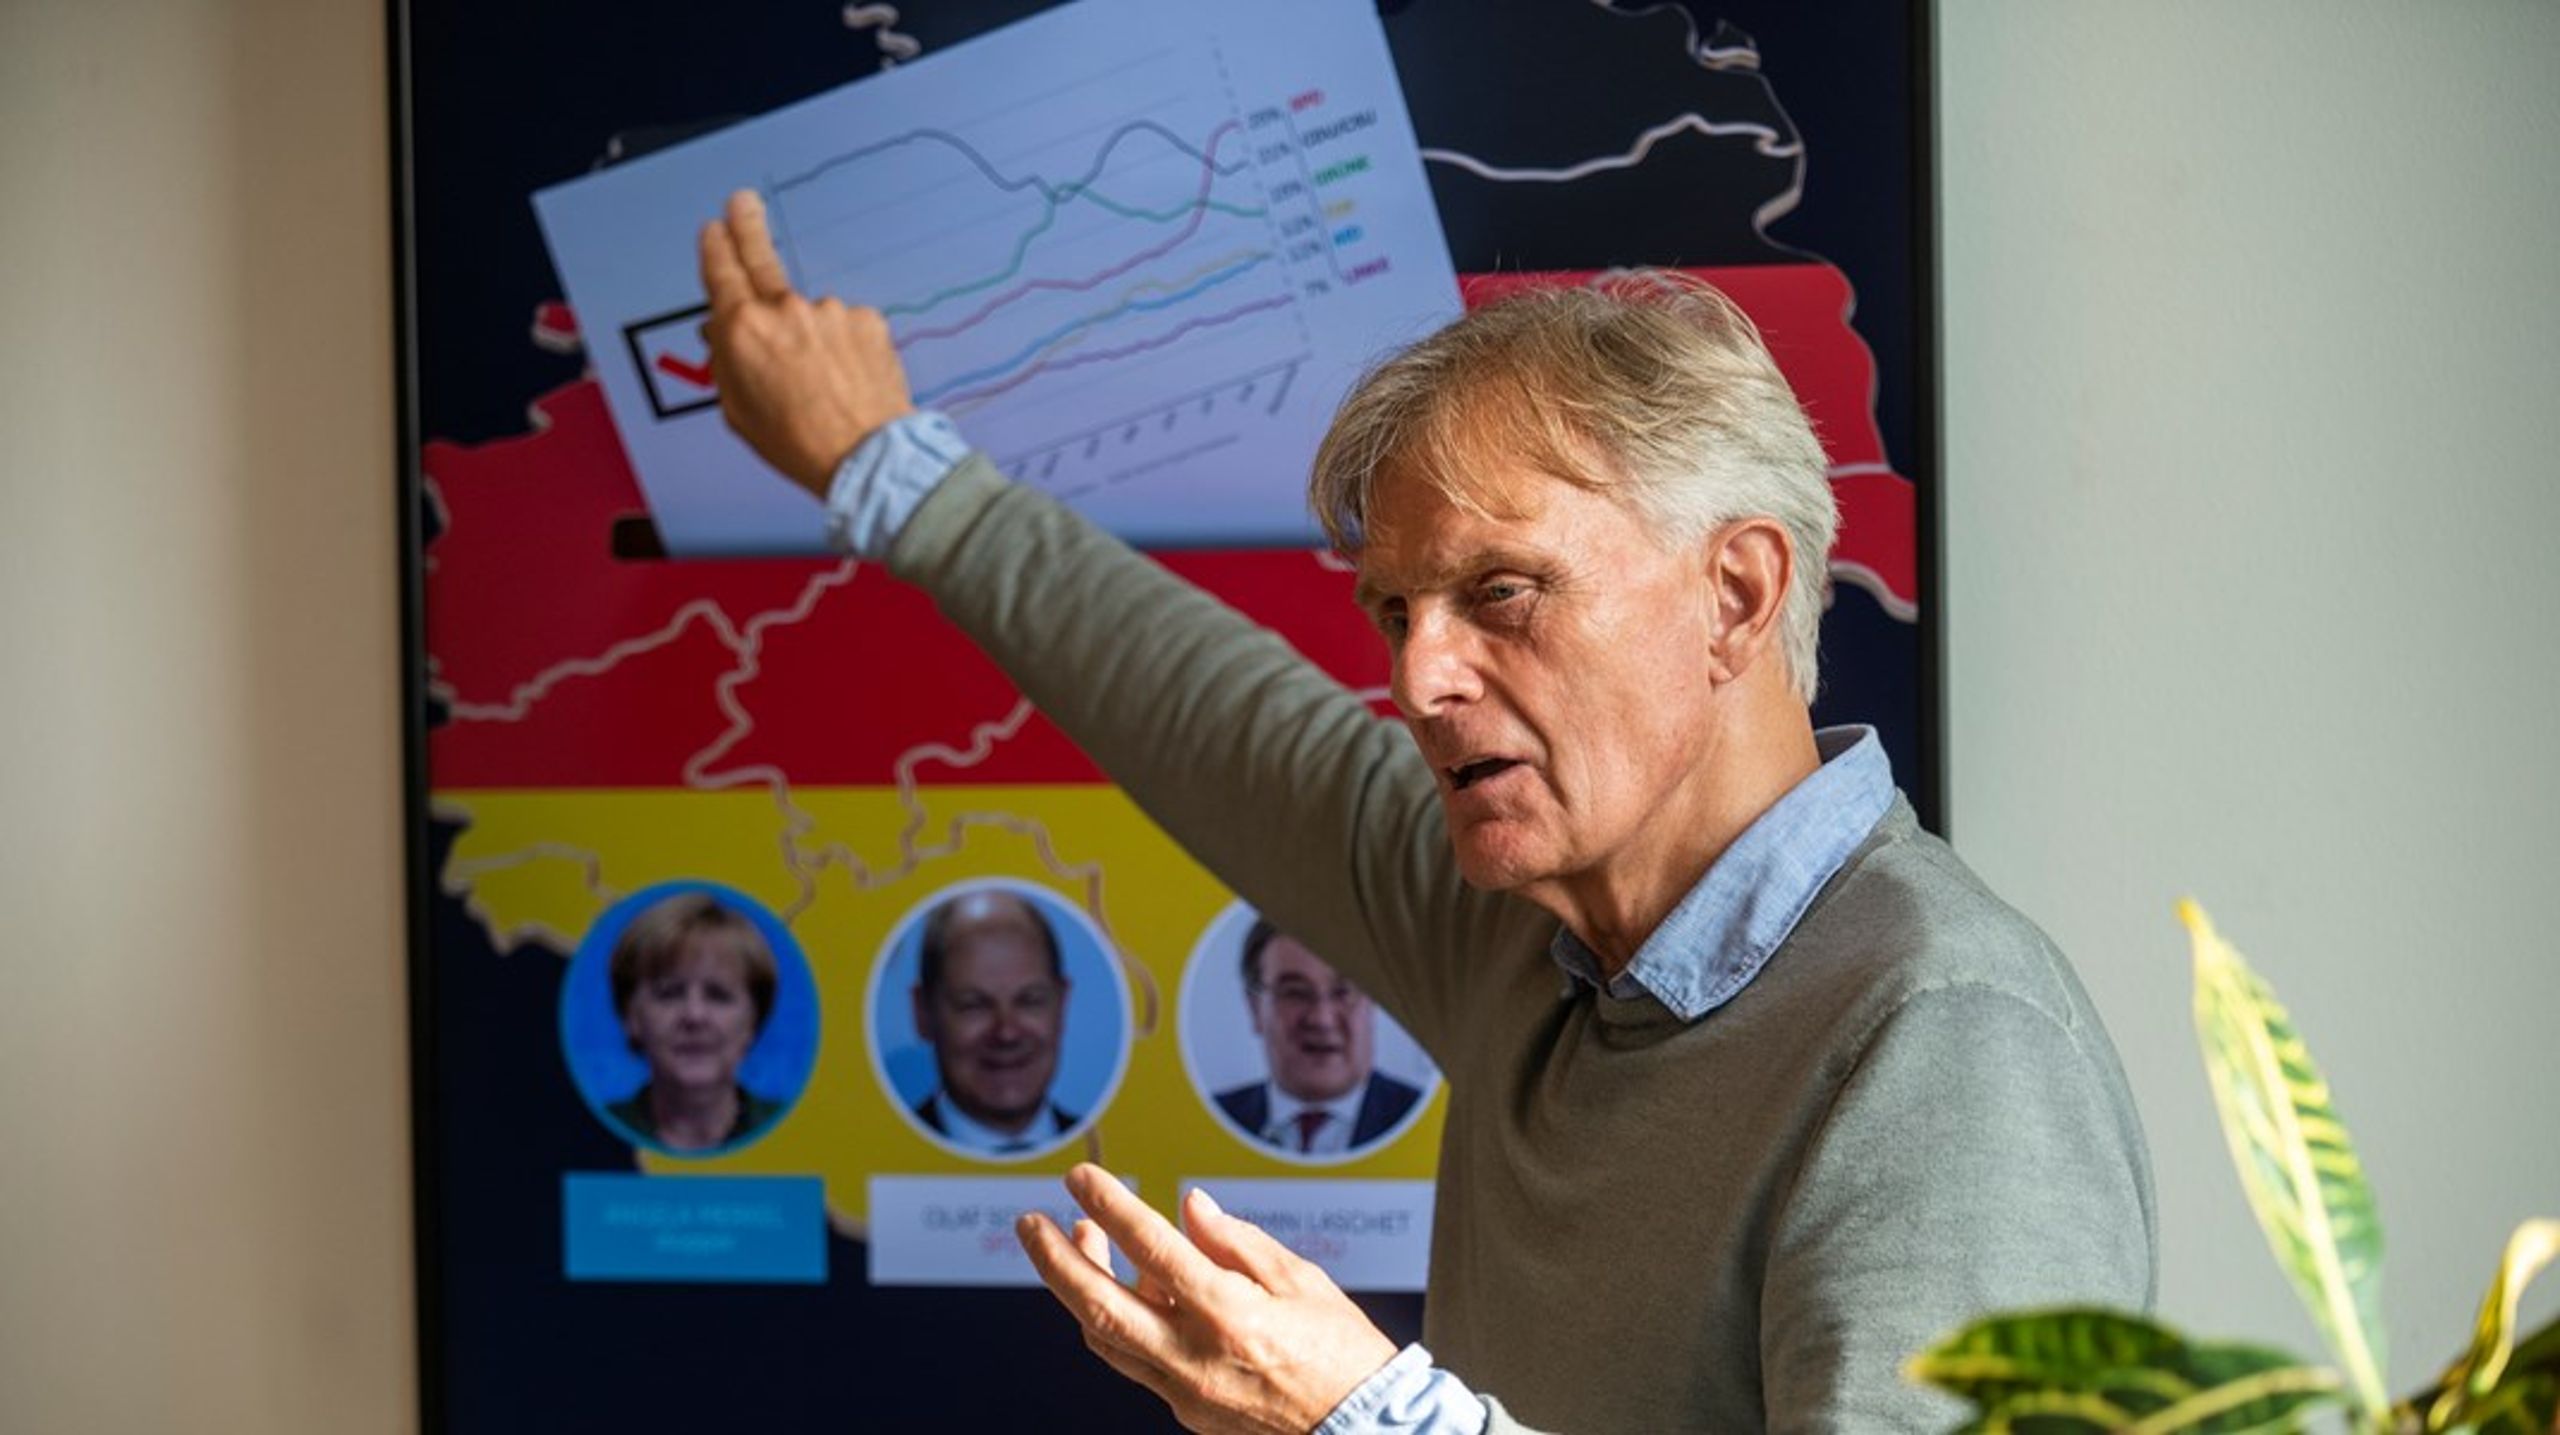 Tidligere dansk ambassadør i Tyskland, Friis Arne Petersen, gav et oplæg til Dansk Metals valgarrangement, hvor han nåede vidt omkring den aktuelle politiske situation i Tyskland. Efter oplægget blev han hos Dansk Metal og fulgte med i valget.